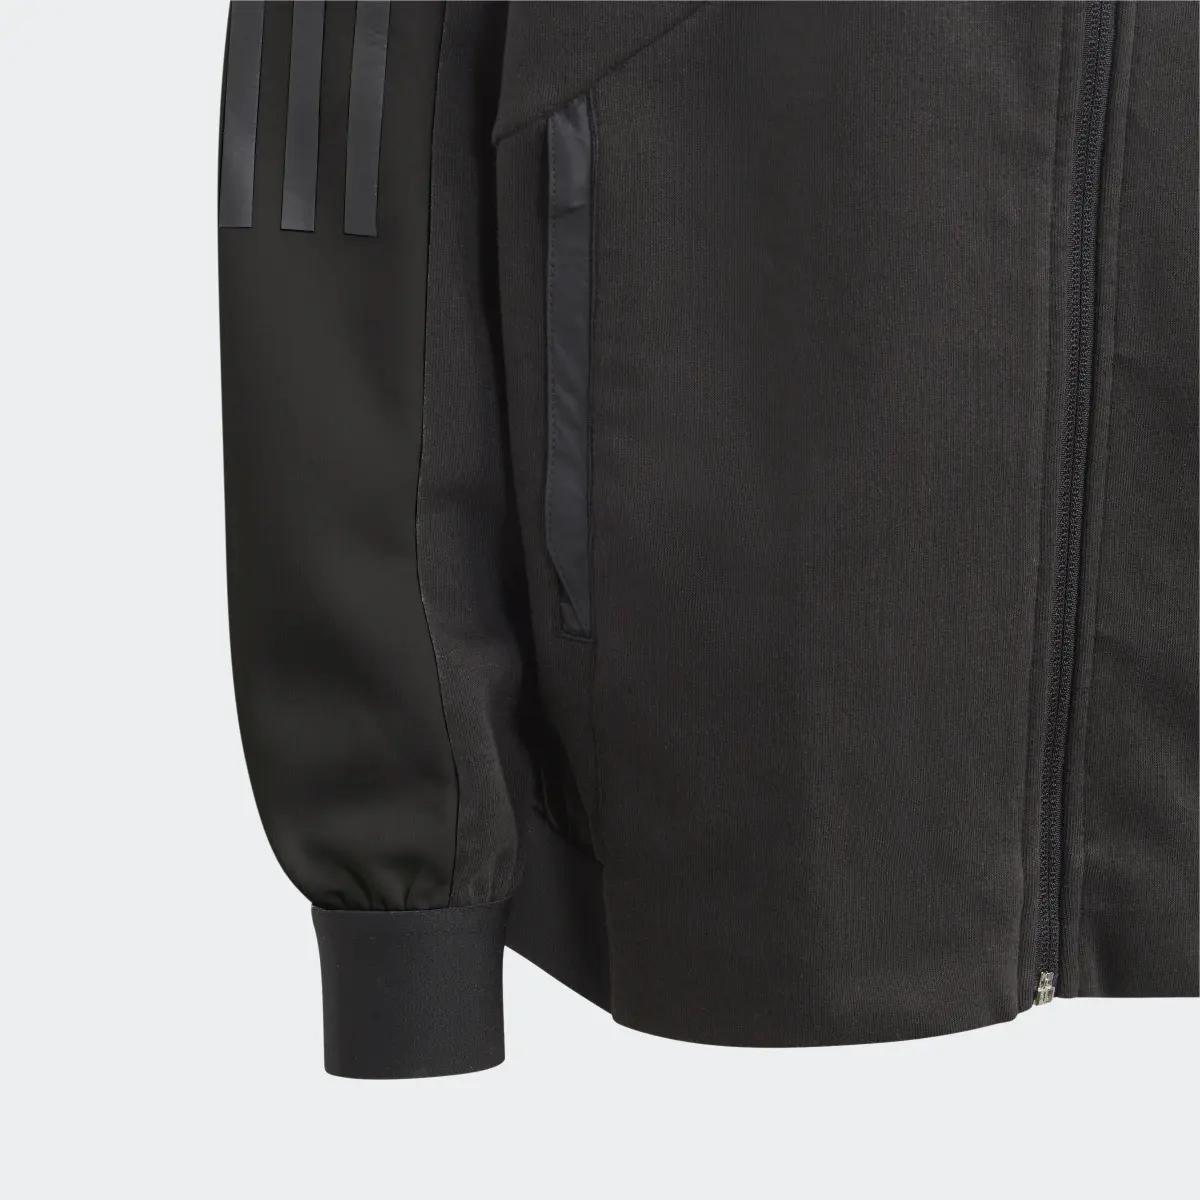 Adidas Tiro Suit Up Knit Track Jacket. 3